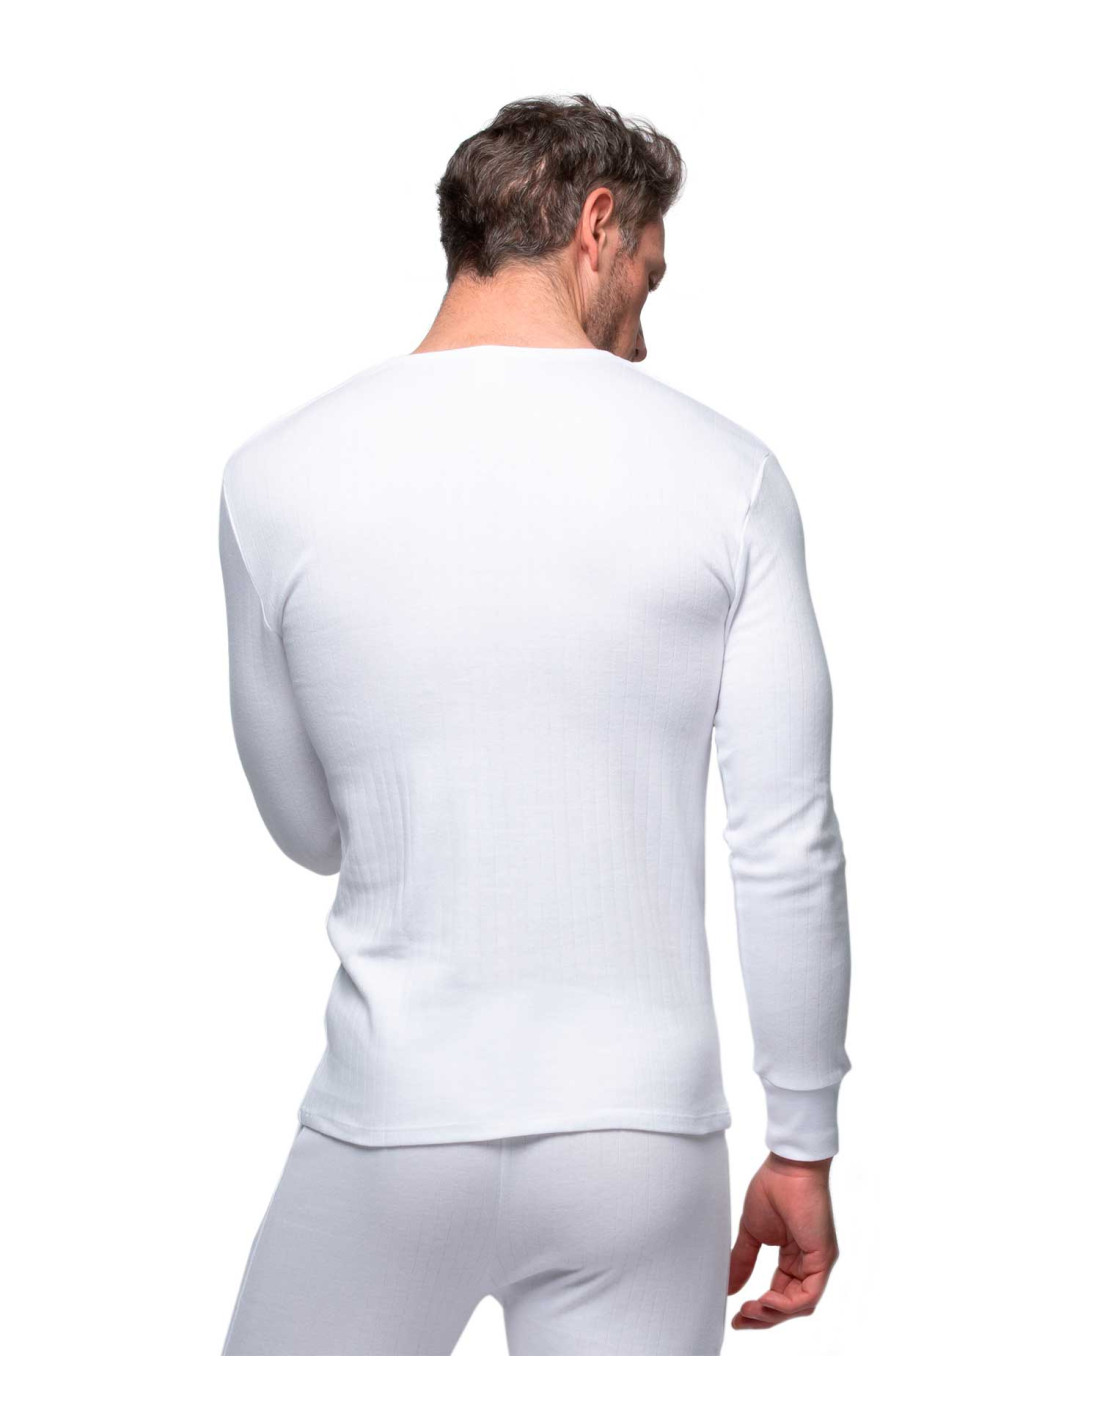 Camiseta interior manga larga hombre cuello pico blanca  OM Hogar ® Tienda  online de telas, cortinas, complementos del hogar y moda.